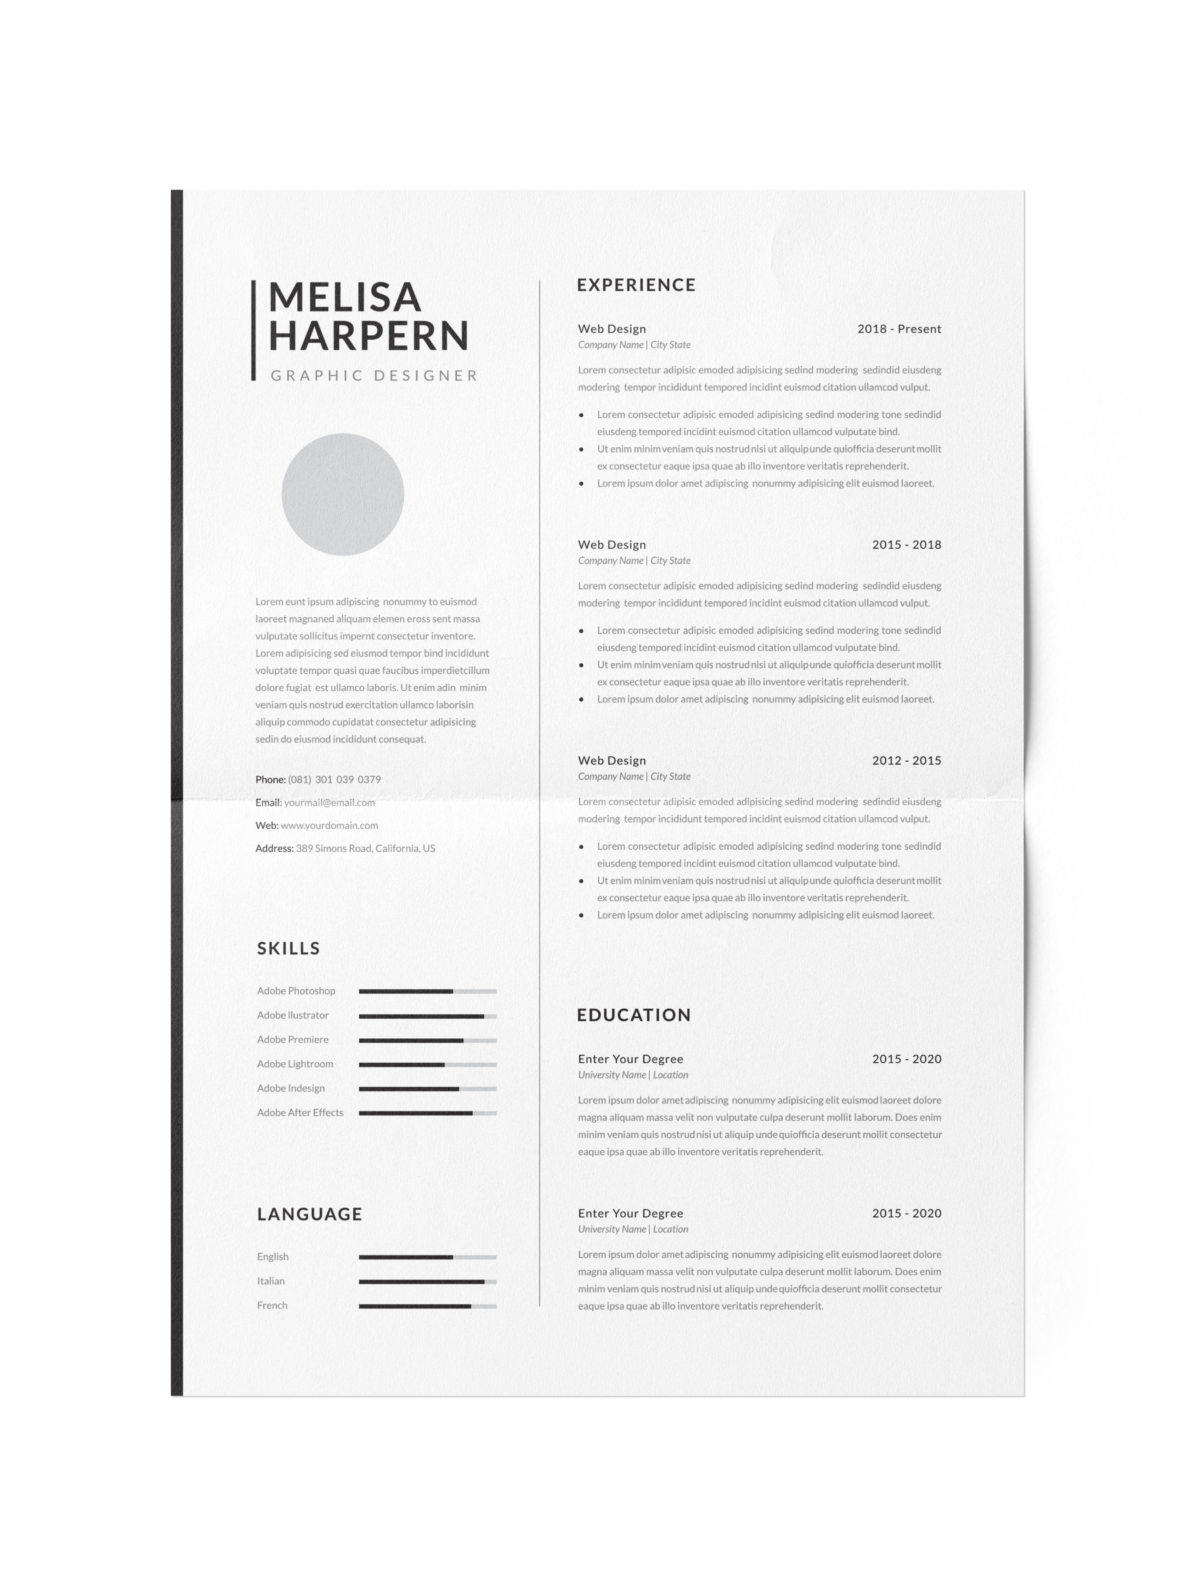 CV #81 Melisa Happern